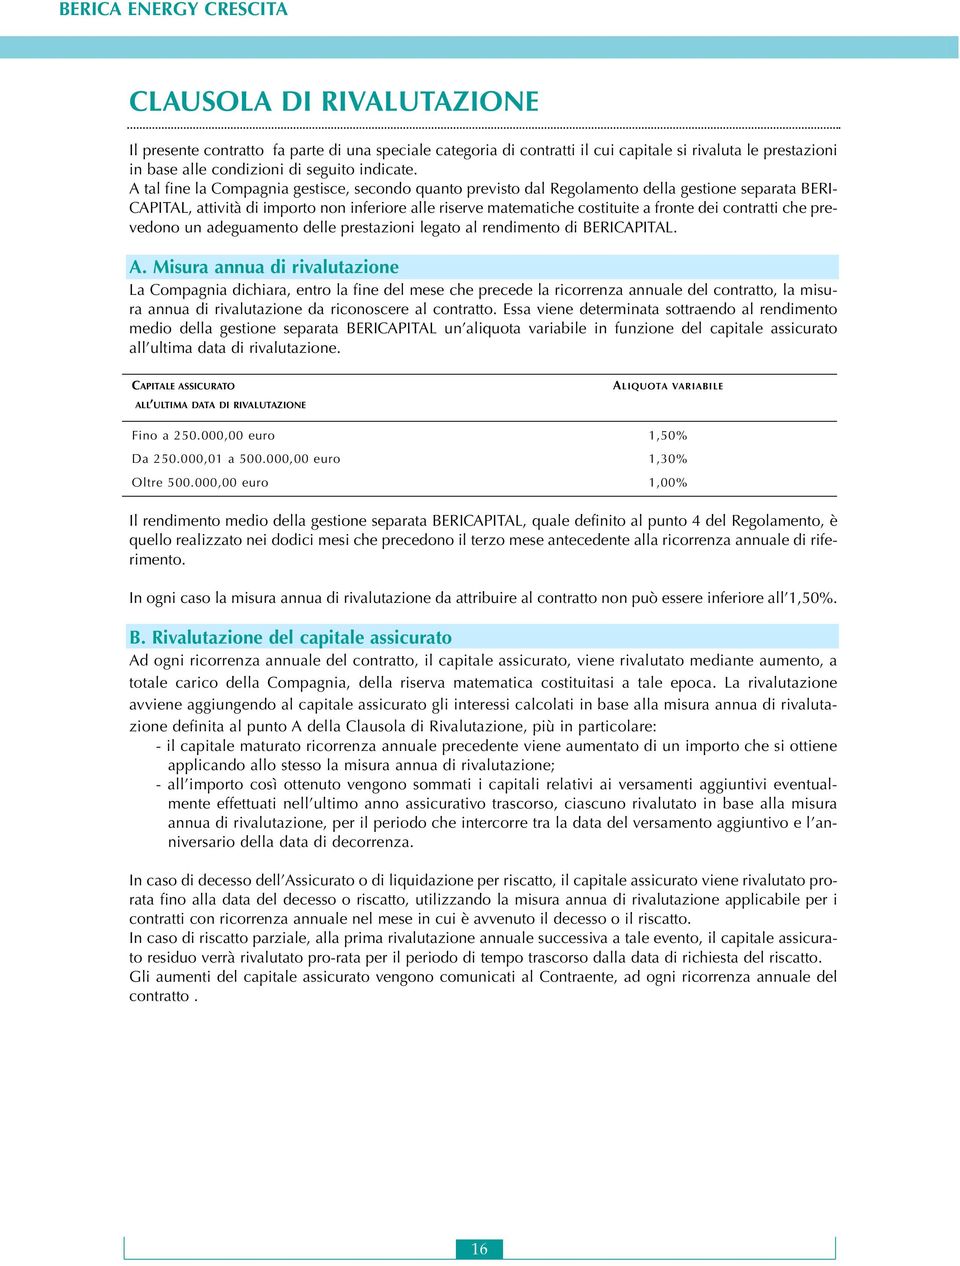 contratti che prevedono un adeguamento delle prestazioni legato al rendimento di BERICAPITAL. A.